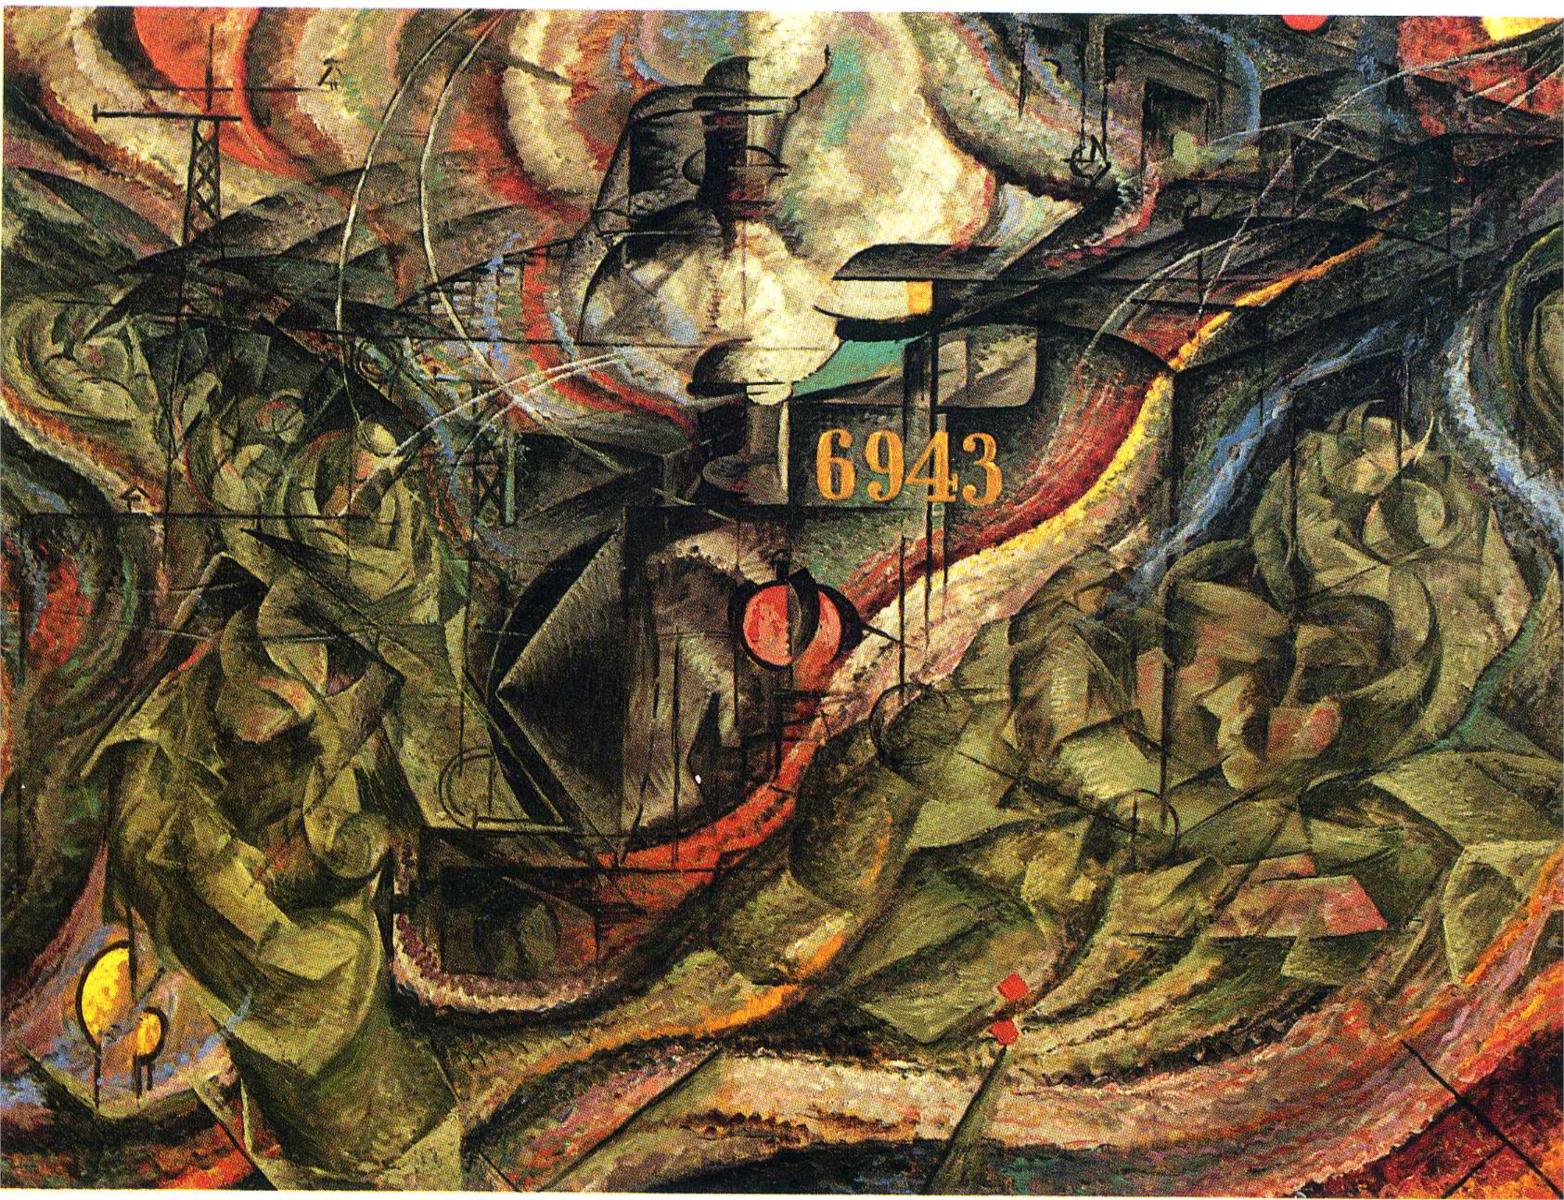 Stany umysłu I: Pożegnania by Umberto Boccioni - 1911 - 70.5 x 96.2 cm 